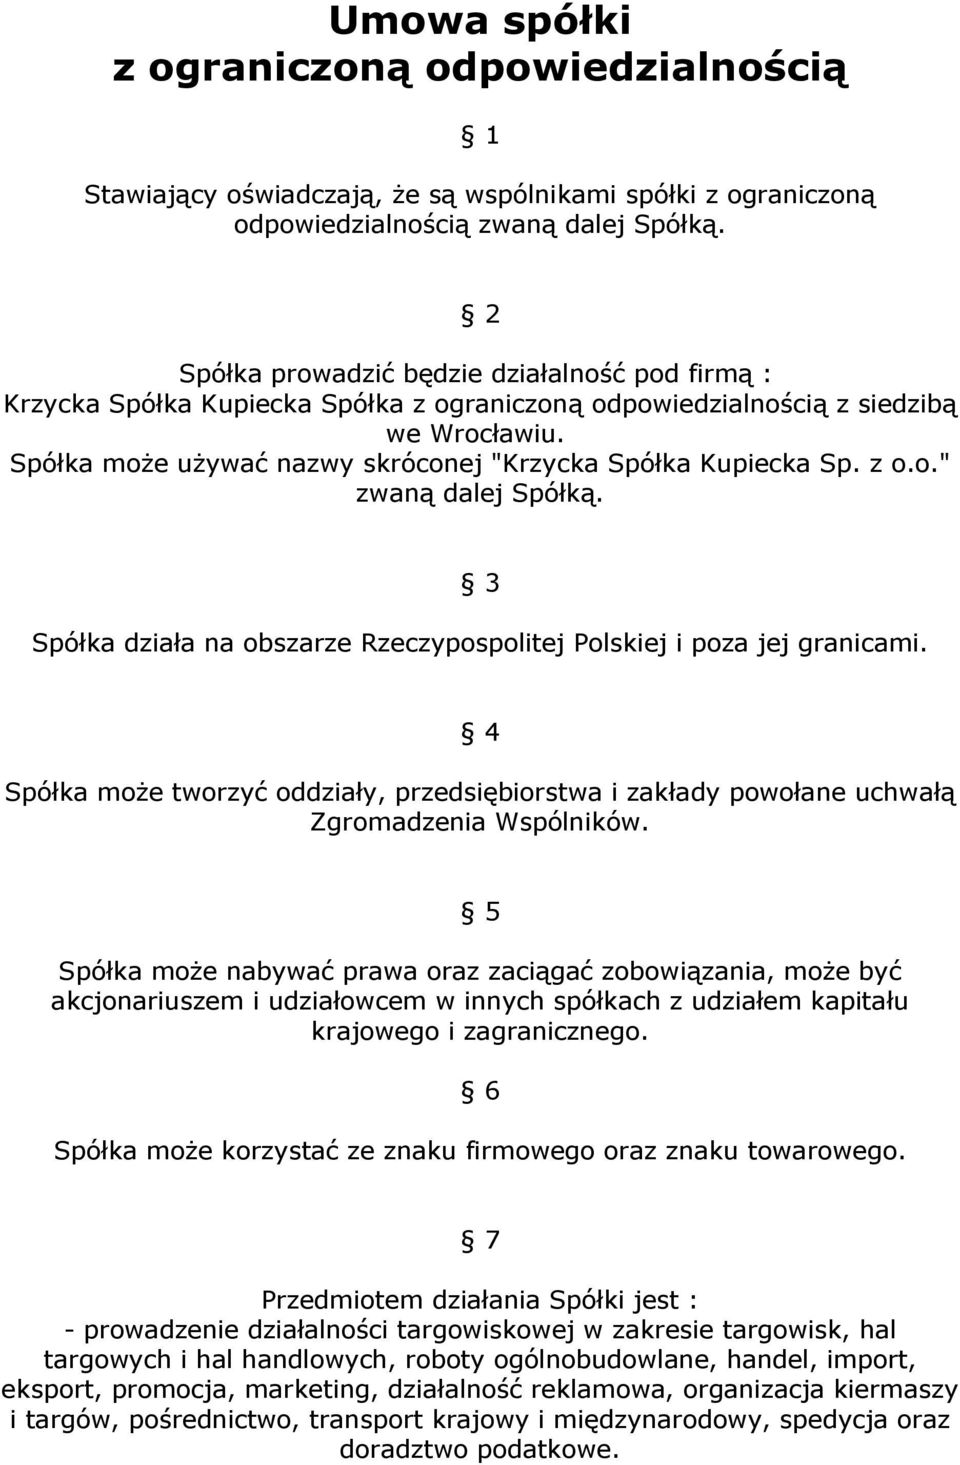 Spółka moŝe uŝywać nazwy skróconej "Krzycka Spółka Kupiecka Sp. z o.o." zwaną dalej Spółką. 3 Spółka działa na obszarze Rzeczypospolitej Polskiej i poza jej granicami.